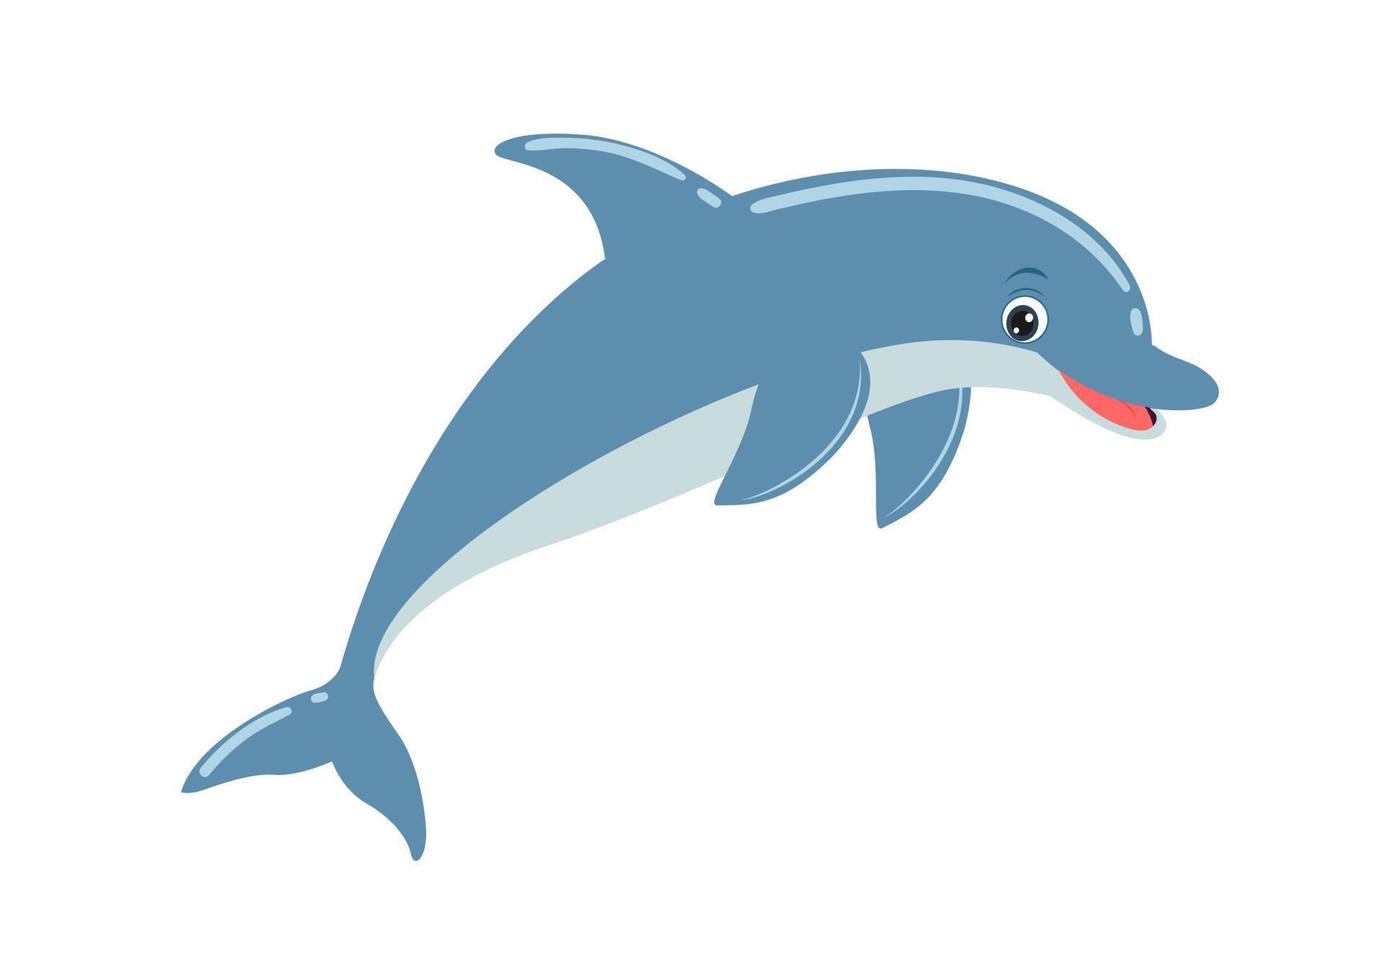 simpatico cartone animato delfino in stile piatto. illustrazione vettoriale di delfino isolato su sfondo bianco